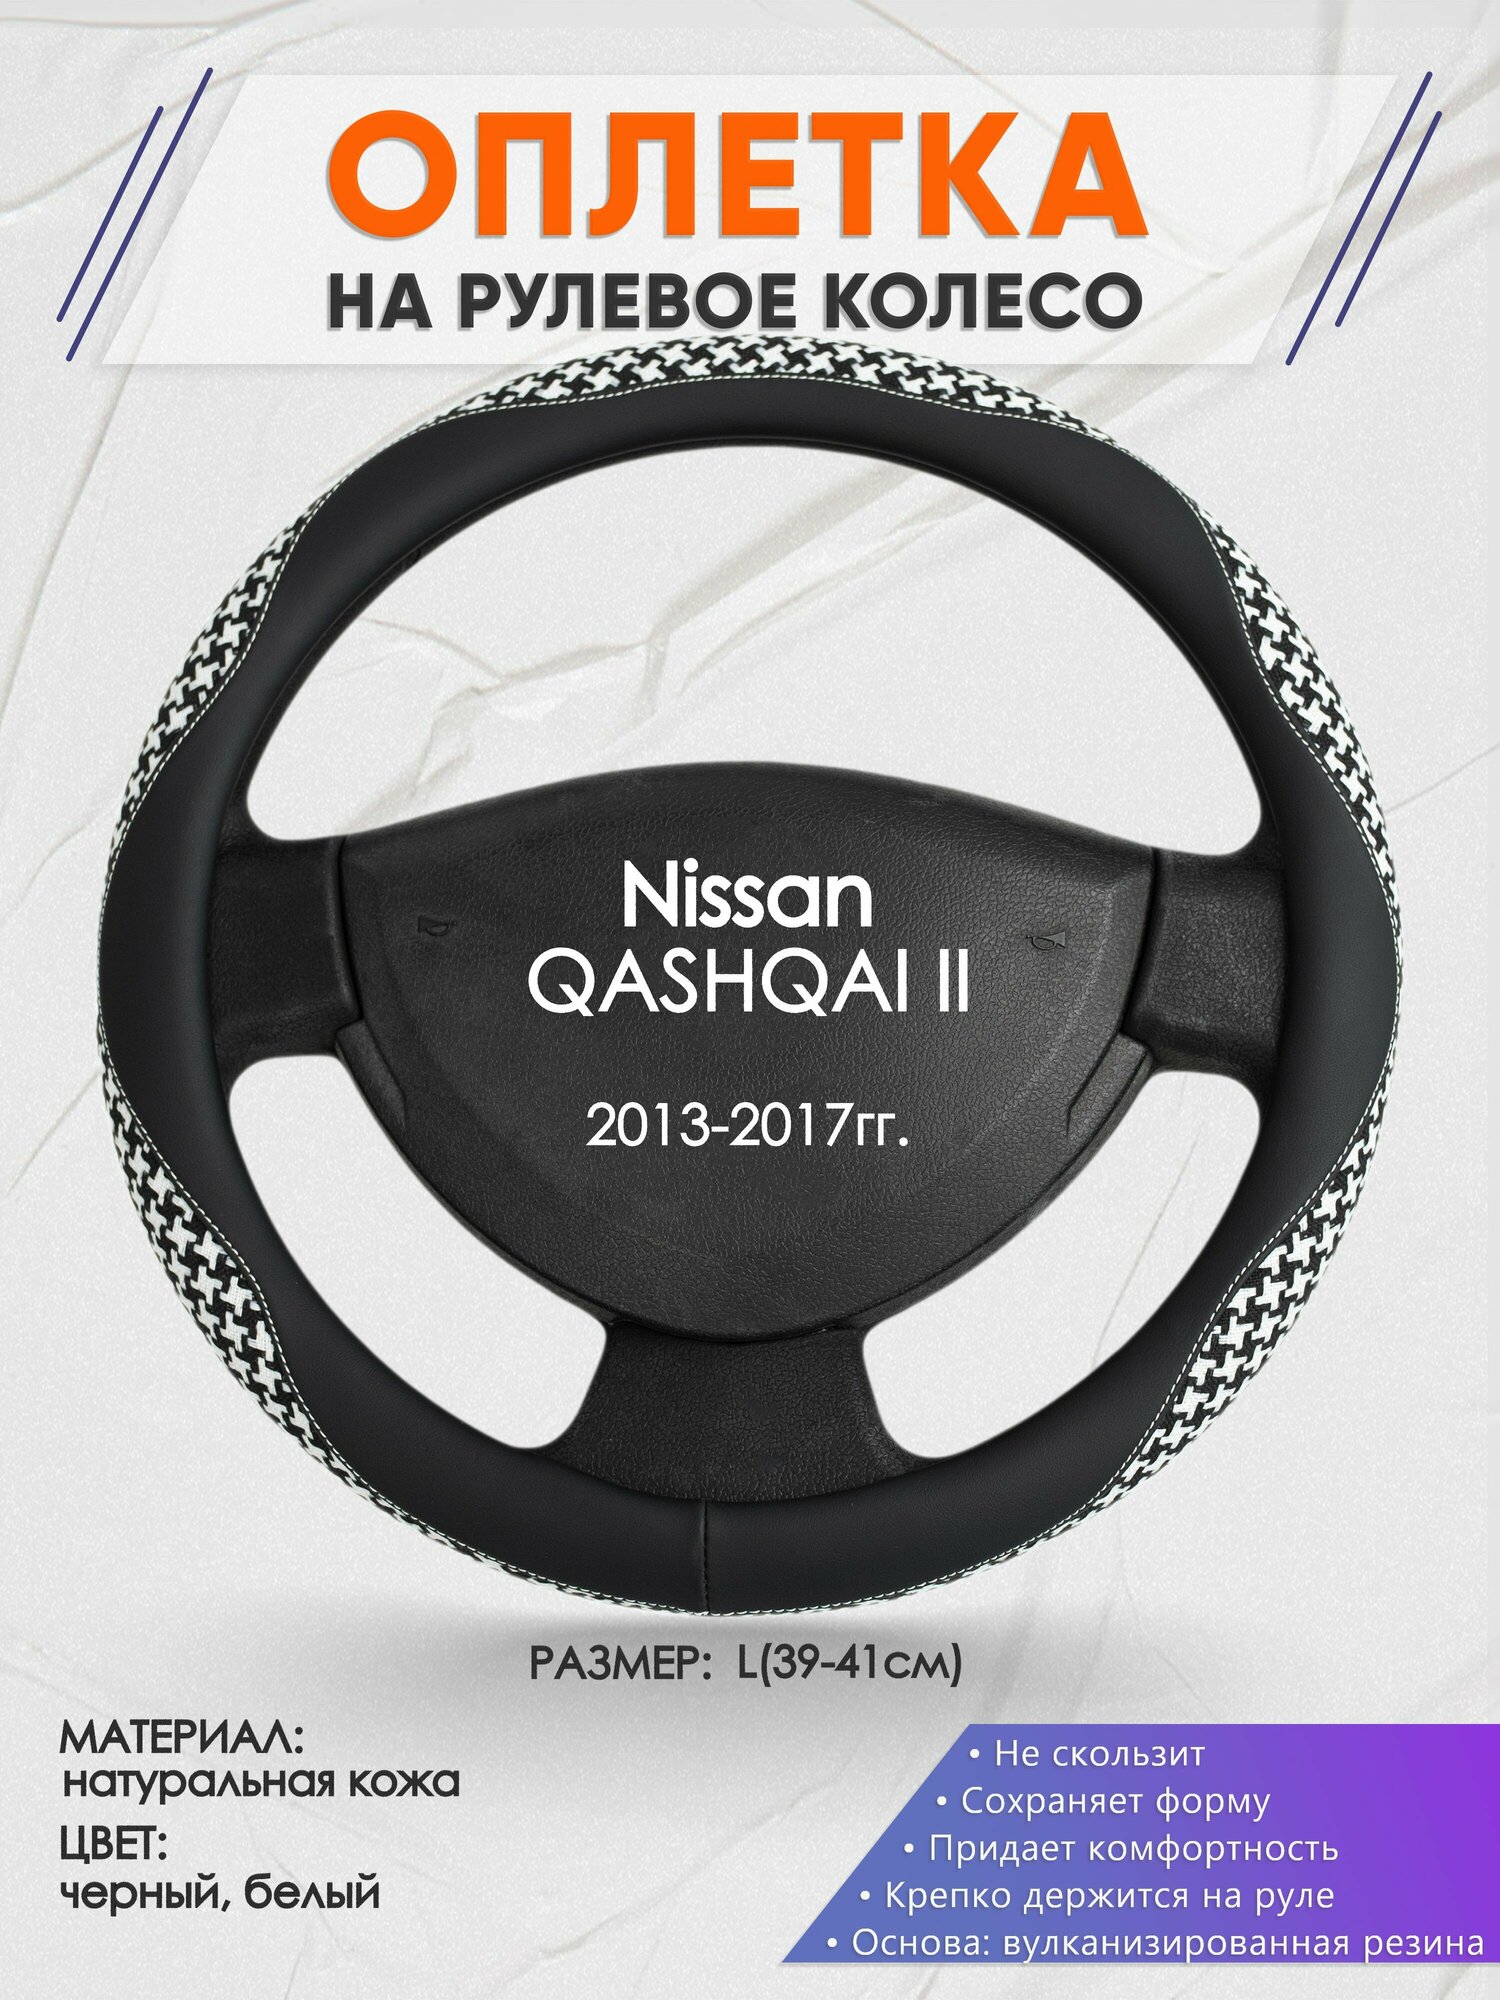 Оплетка на руль для Nissan QASHQAI 2(Ниссан Кашкай 2) 2013-2017, L(39-41см), Натуральная кожа 21